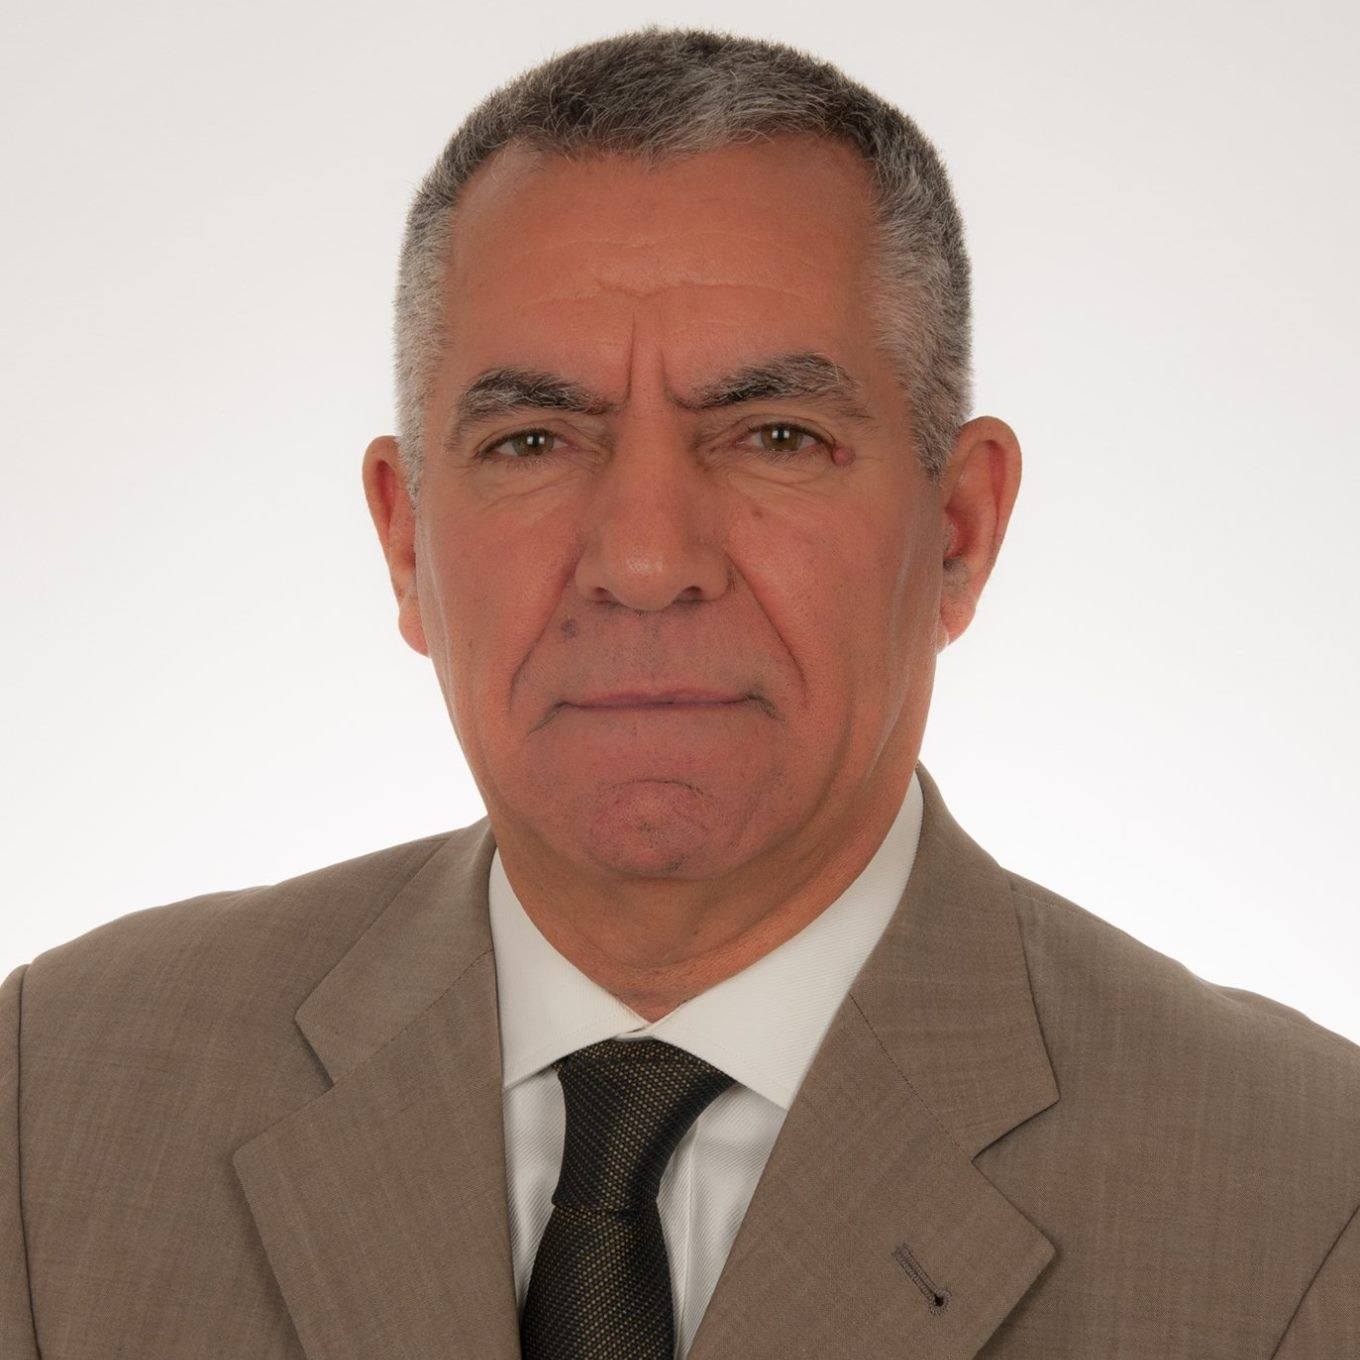 Βασίλης Γκαλογιάννης: Υποψήφιος βουλευτής του ΠΑΣΟΚ στο Νομό Γρεβενών